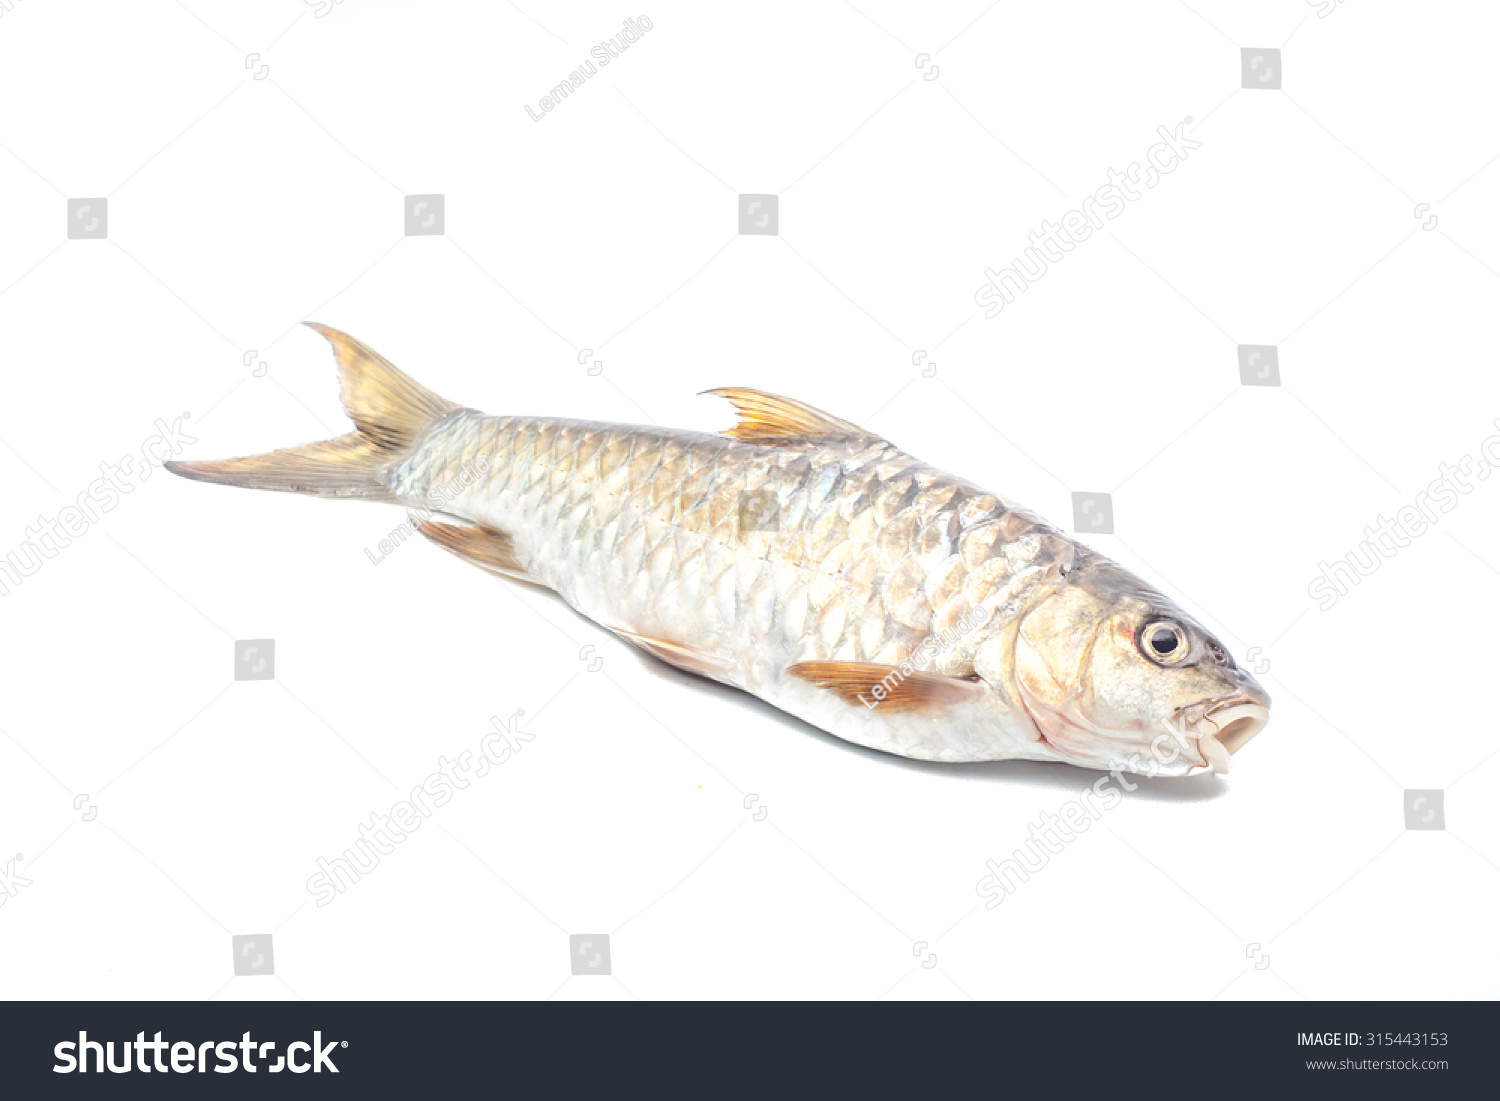 Ikan tengas